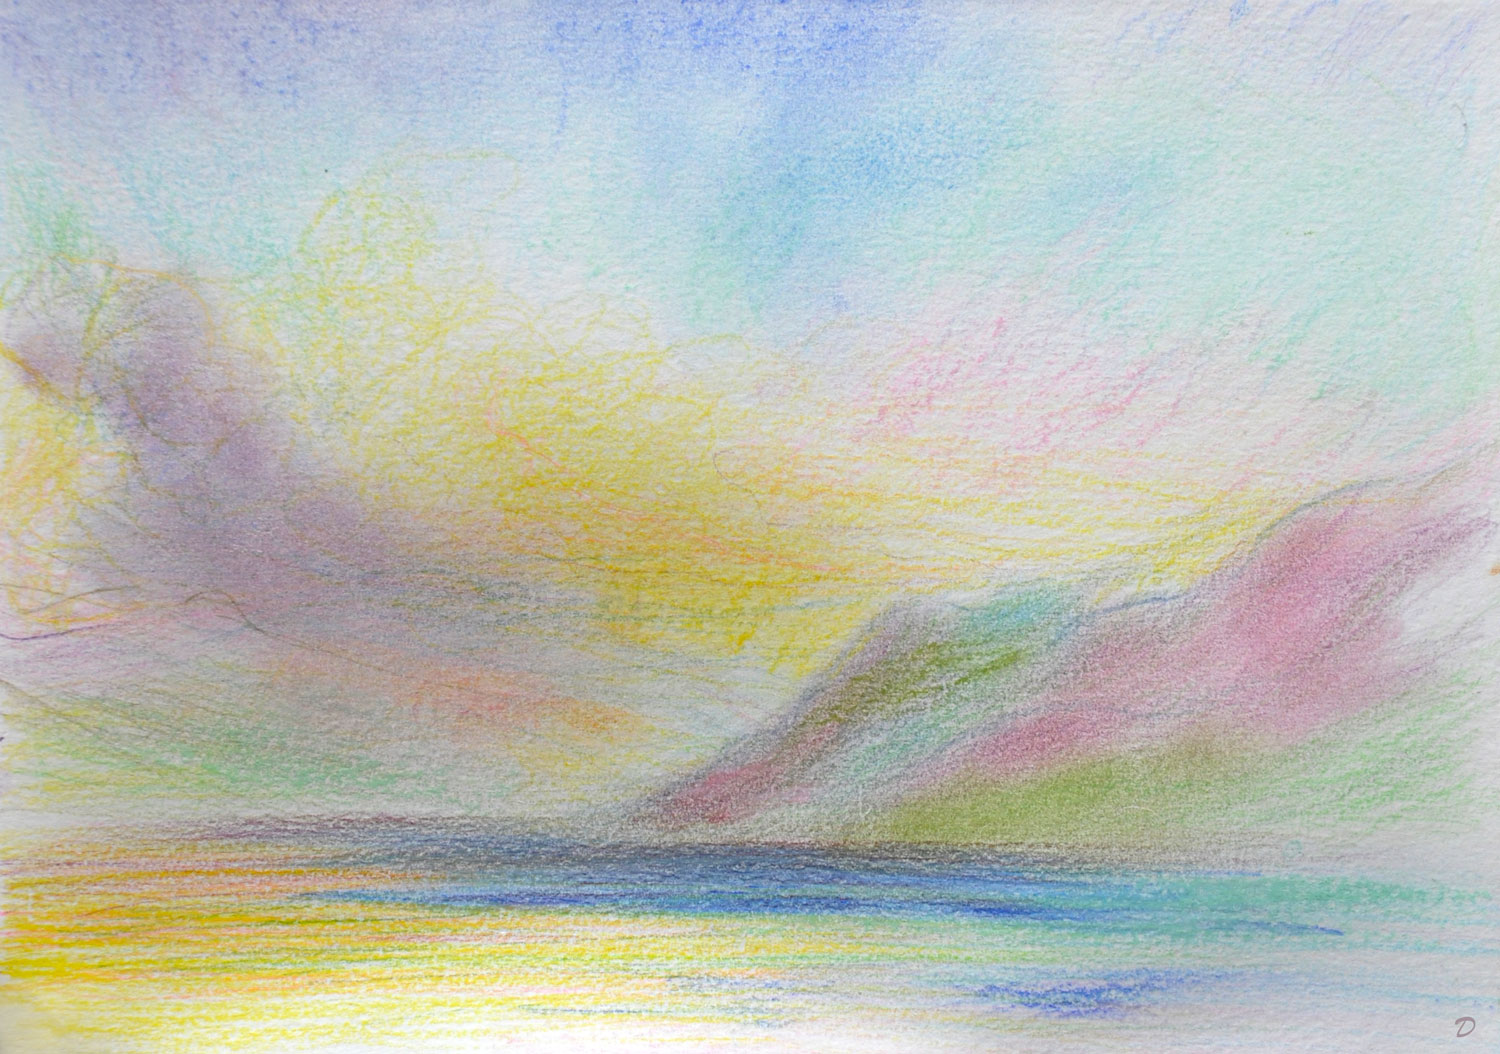 Lac Léman, St Prex, 44. Crayon de couleur et pastel sur papier, 21x29, 2022